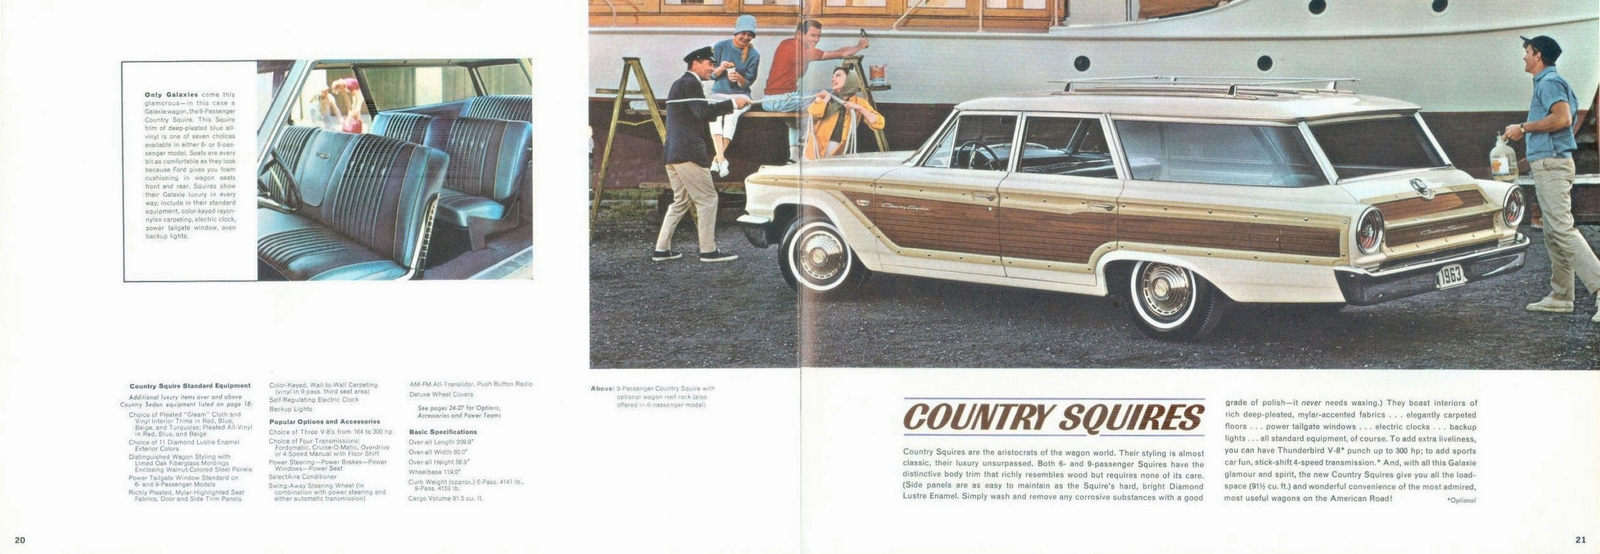 n_1963 Ford Full Size-20-21.jpg